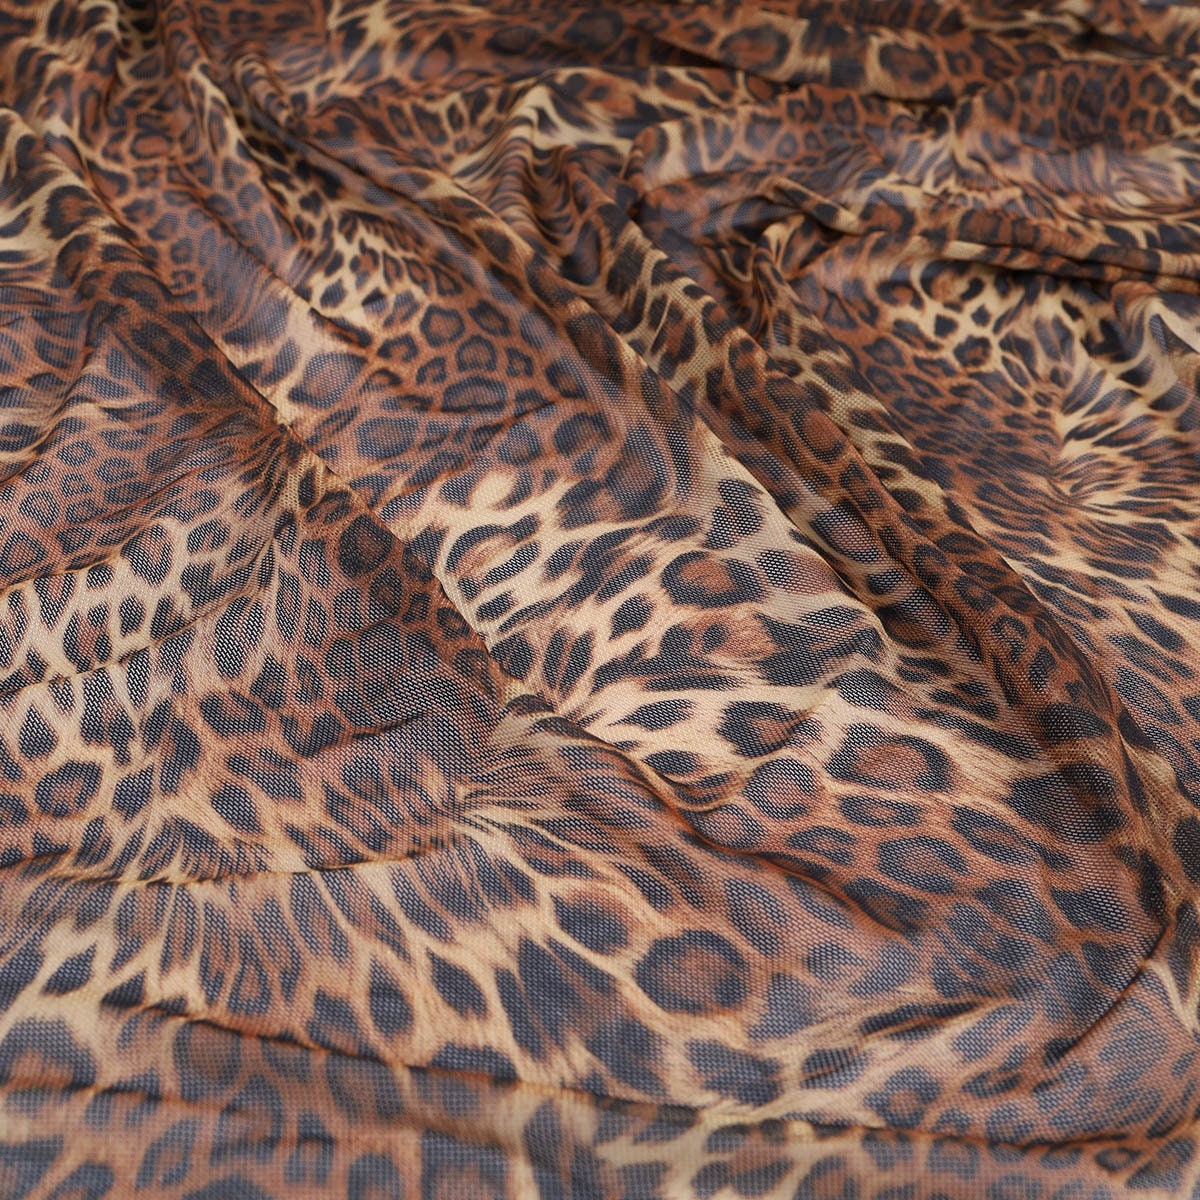 Leopard Mesh -  Canada